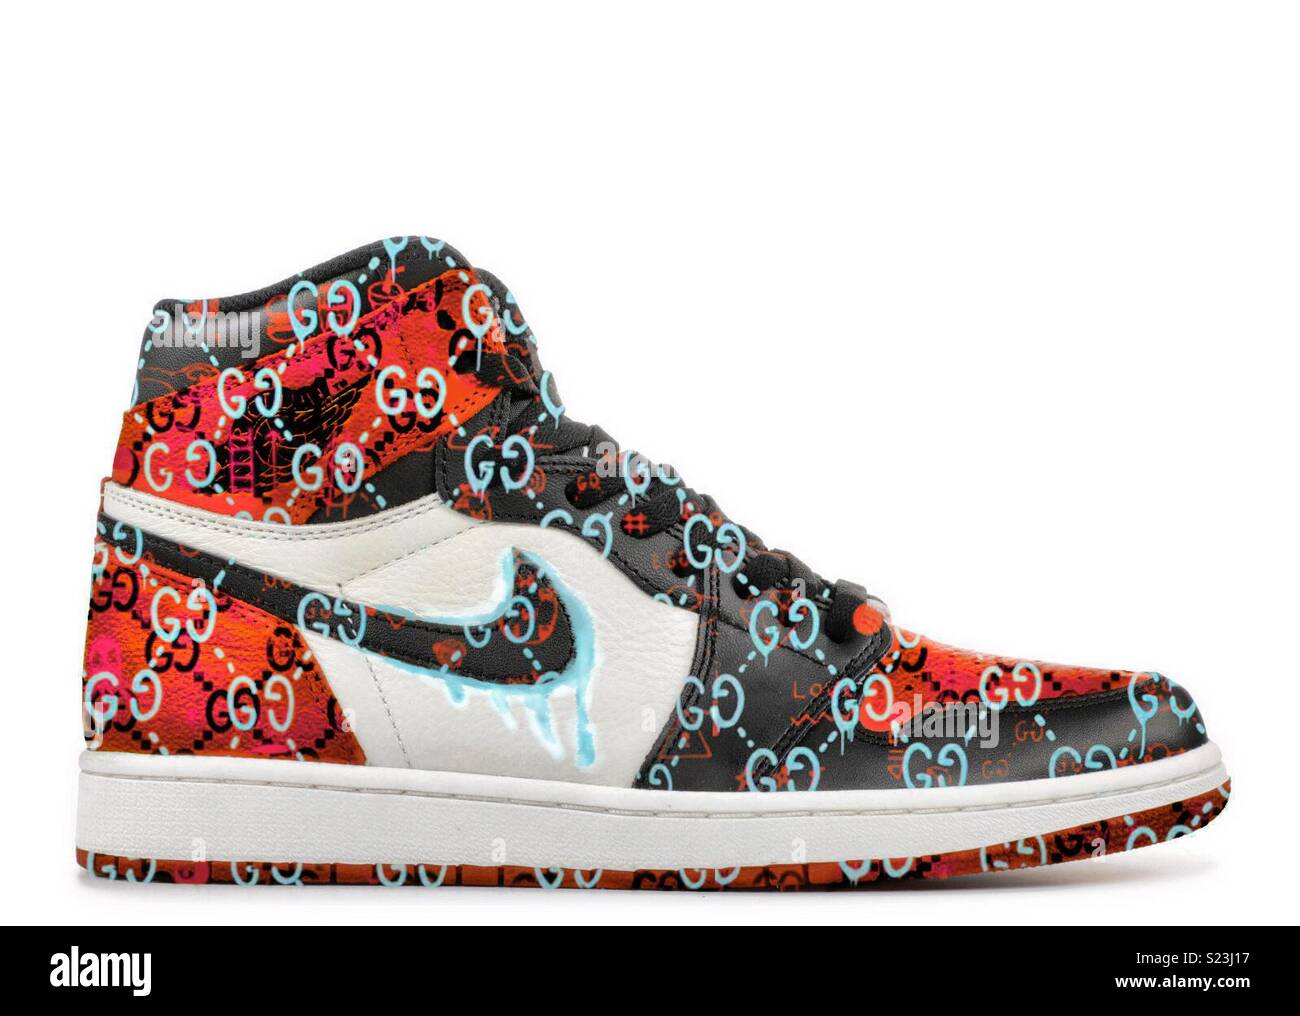 Benutzerdefinierte Gucci x Nike Jordan Kicks, meine insta Hit @ Obsession.  24 k für mehr Stockfotografie - Alamy